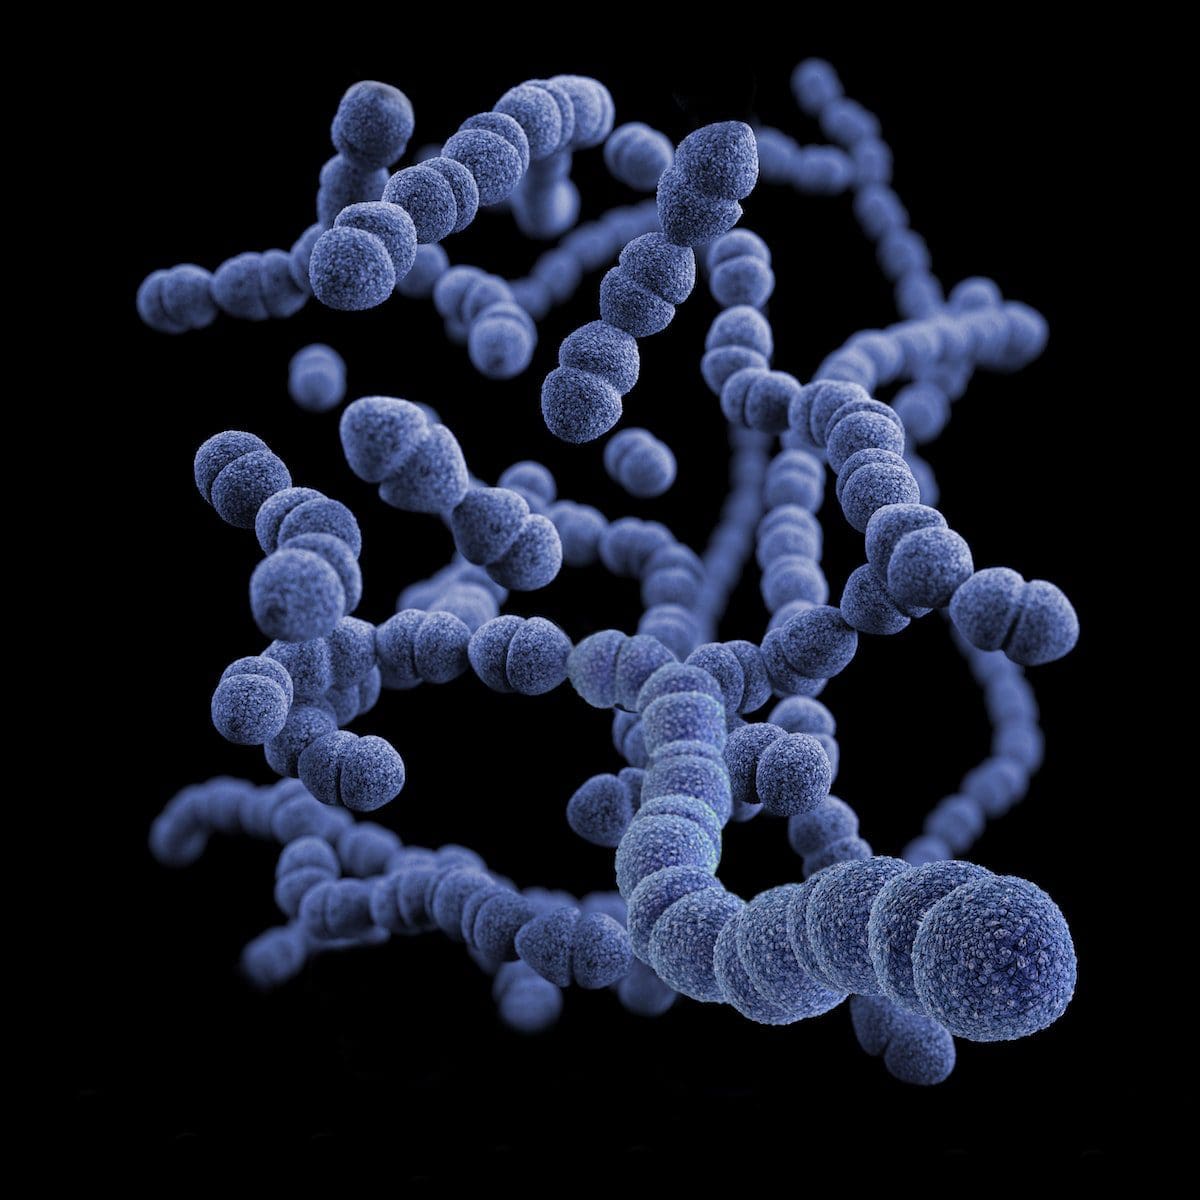 bactéries aérobies